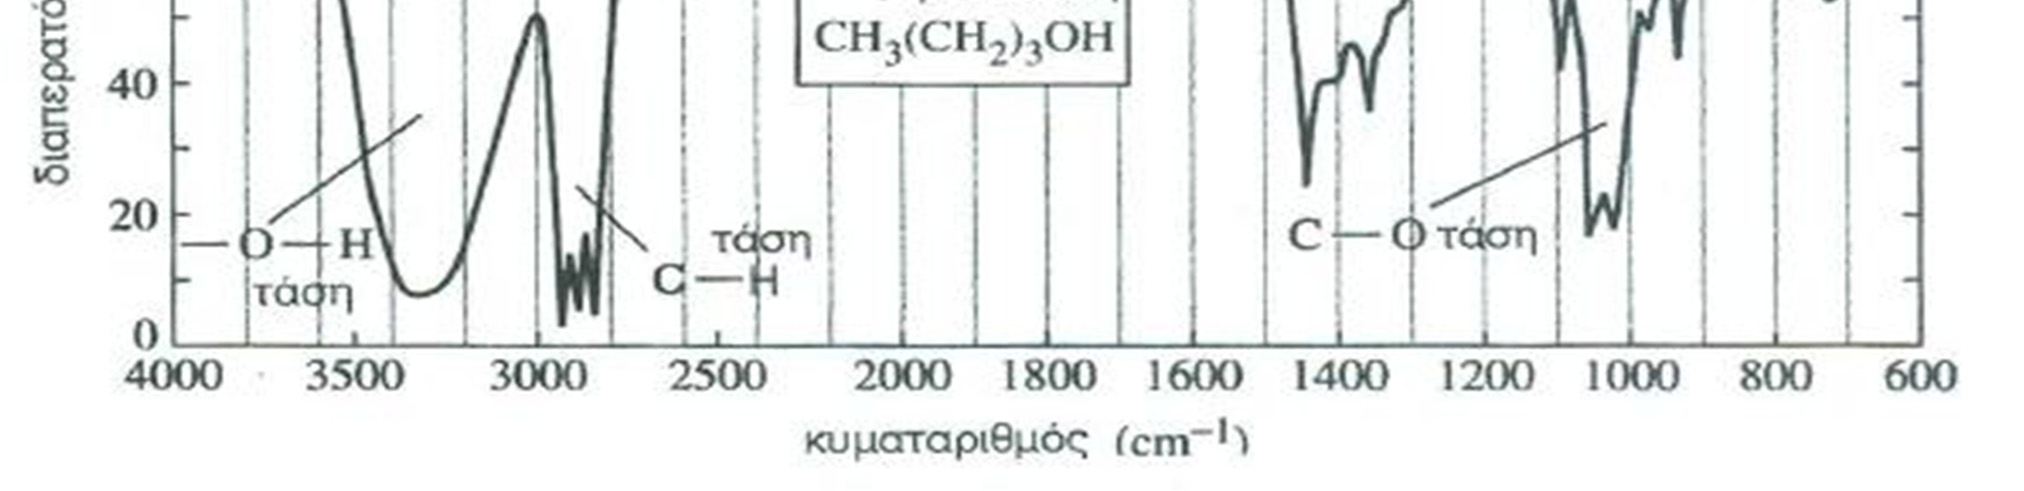 Ο δεσμός Ο-Η στις αλκοόλες απορροφά έντονα σε μια ευρύτατη περιοχή συχνοτήτων, γύρω στο 3330 cm -1. Ενώσεις με δεσμούς C-O (αλκοόλες, αιθέρες), απορροφούν έντονα στην περιοχή 1000-1200 cm -1.